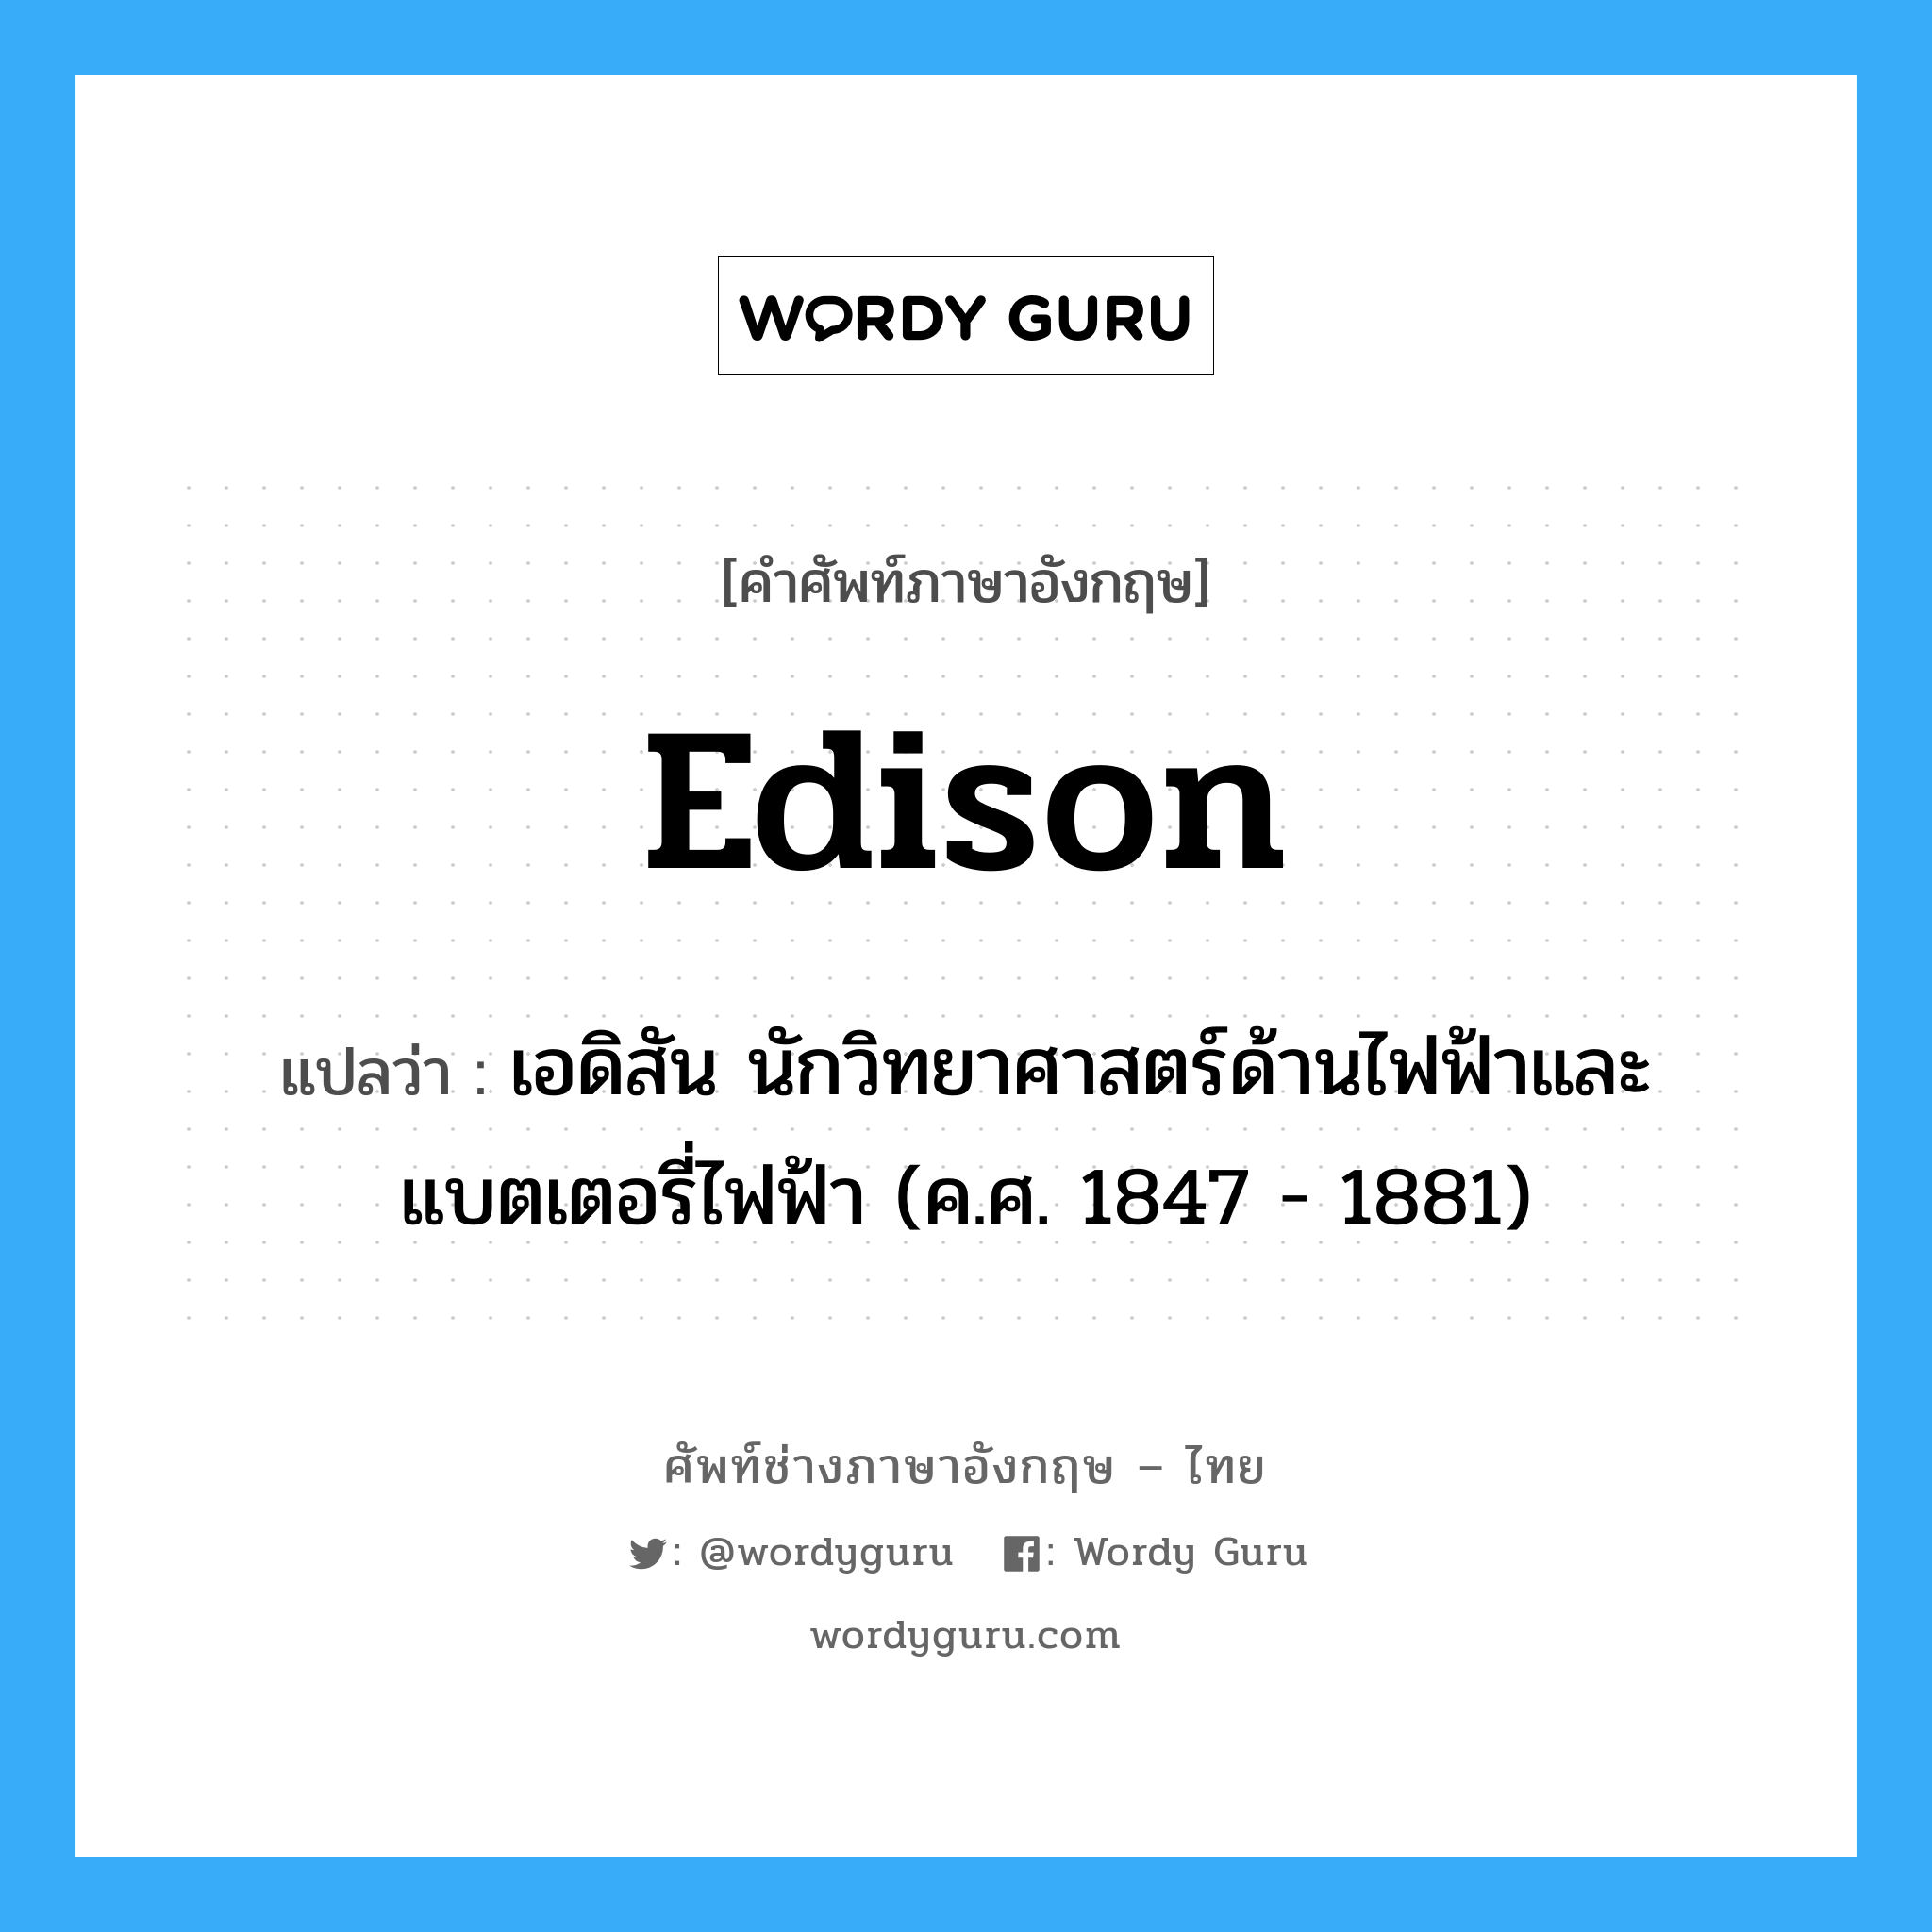 เอดิสัน นักวิทยาศาสตร์ด้านไฟฟ้าและแบตเตอรี่ไฟฟ้า (ค.ศ. 1847 - 1881) ภาษาอังกฤษ?, คำศัพท์ช่างภาษาอังกฤษ - ไทย เอดิสัน นักวิทยาศาสตร์ด้านไฟฟ้าและแบตเตอรี่ไฟฟ้า (ค.ศ. 1847 - 1881) คำศัพท์ภาษาอังกฤษ เอดิสัน นักวิทยาศาสตร์ด้านไฟฟ้าและแบตเตอรี่ไฟฟ้า (ค.ศ. 1847 - 1881) แปลว่า Edison